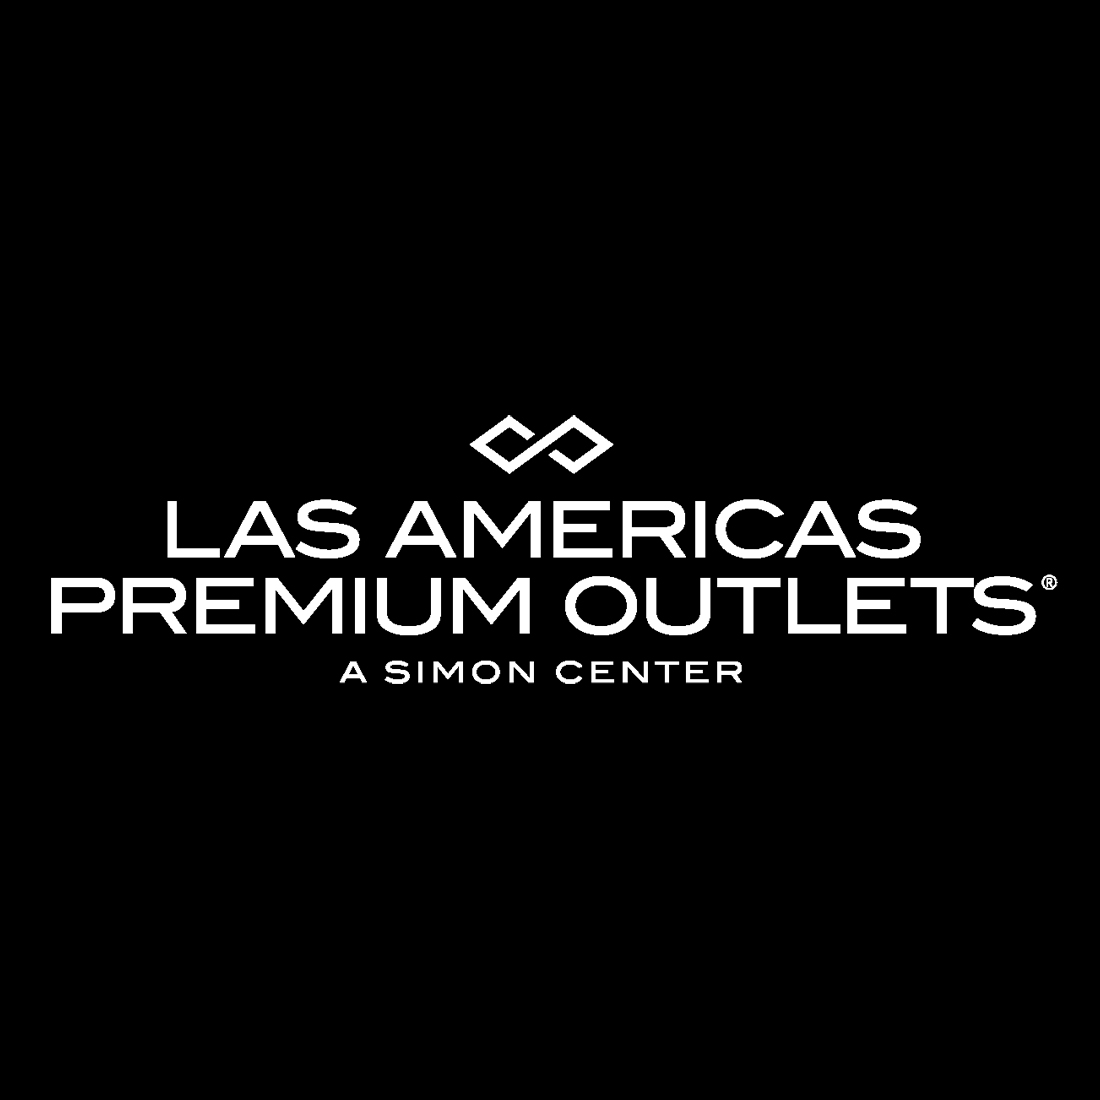 Las Americas Premium Outlets San Diego (619)934-8400